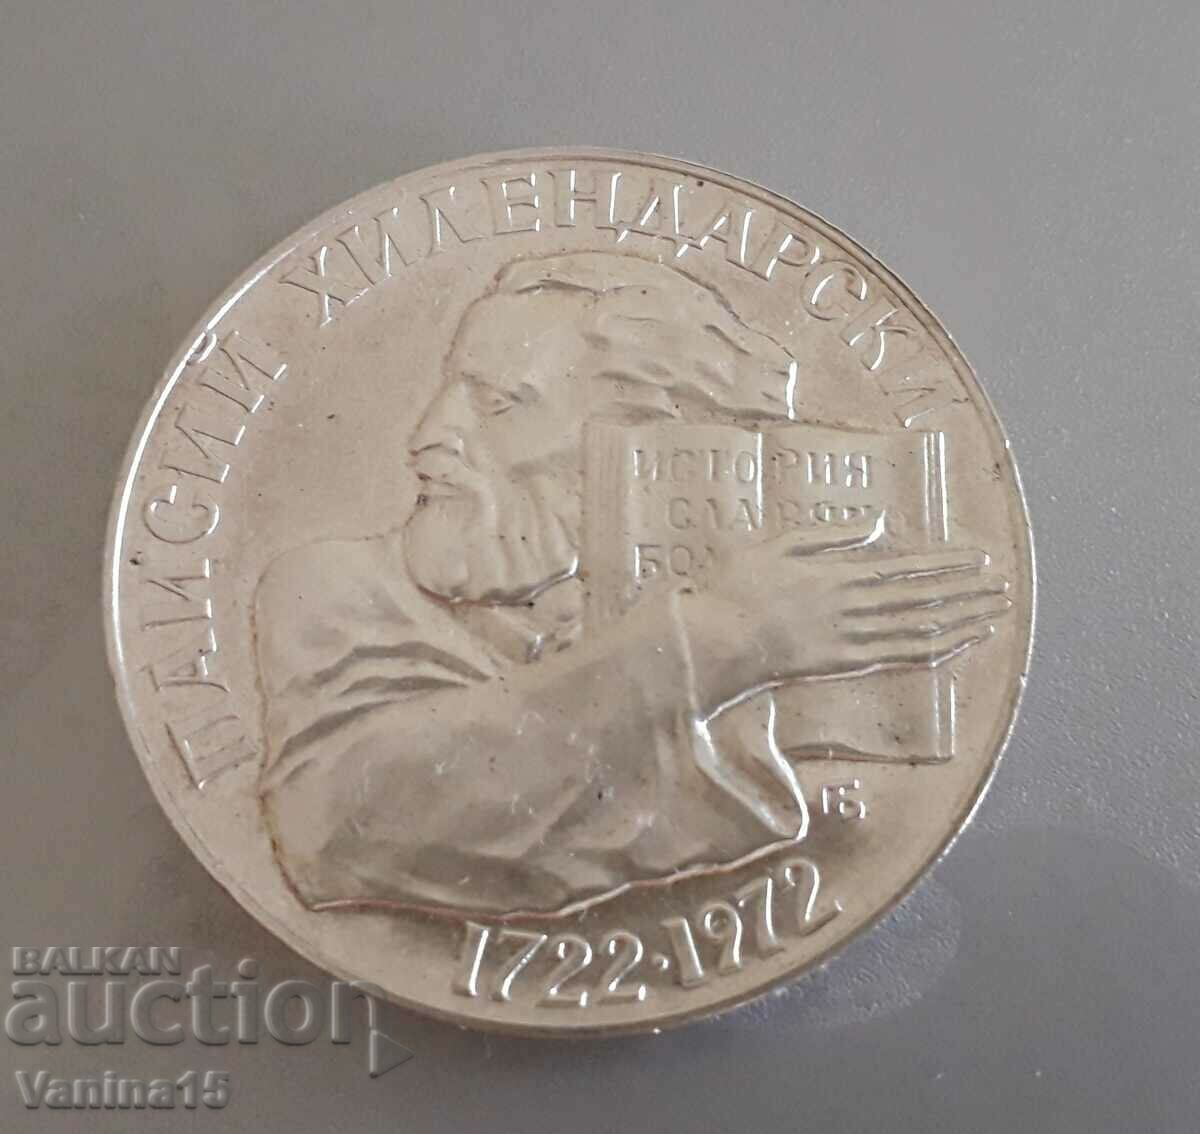 Ιωβηλαίου ασημένιο νόμισμα 5 λέβα. Paisius Hilendarski 1972